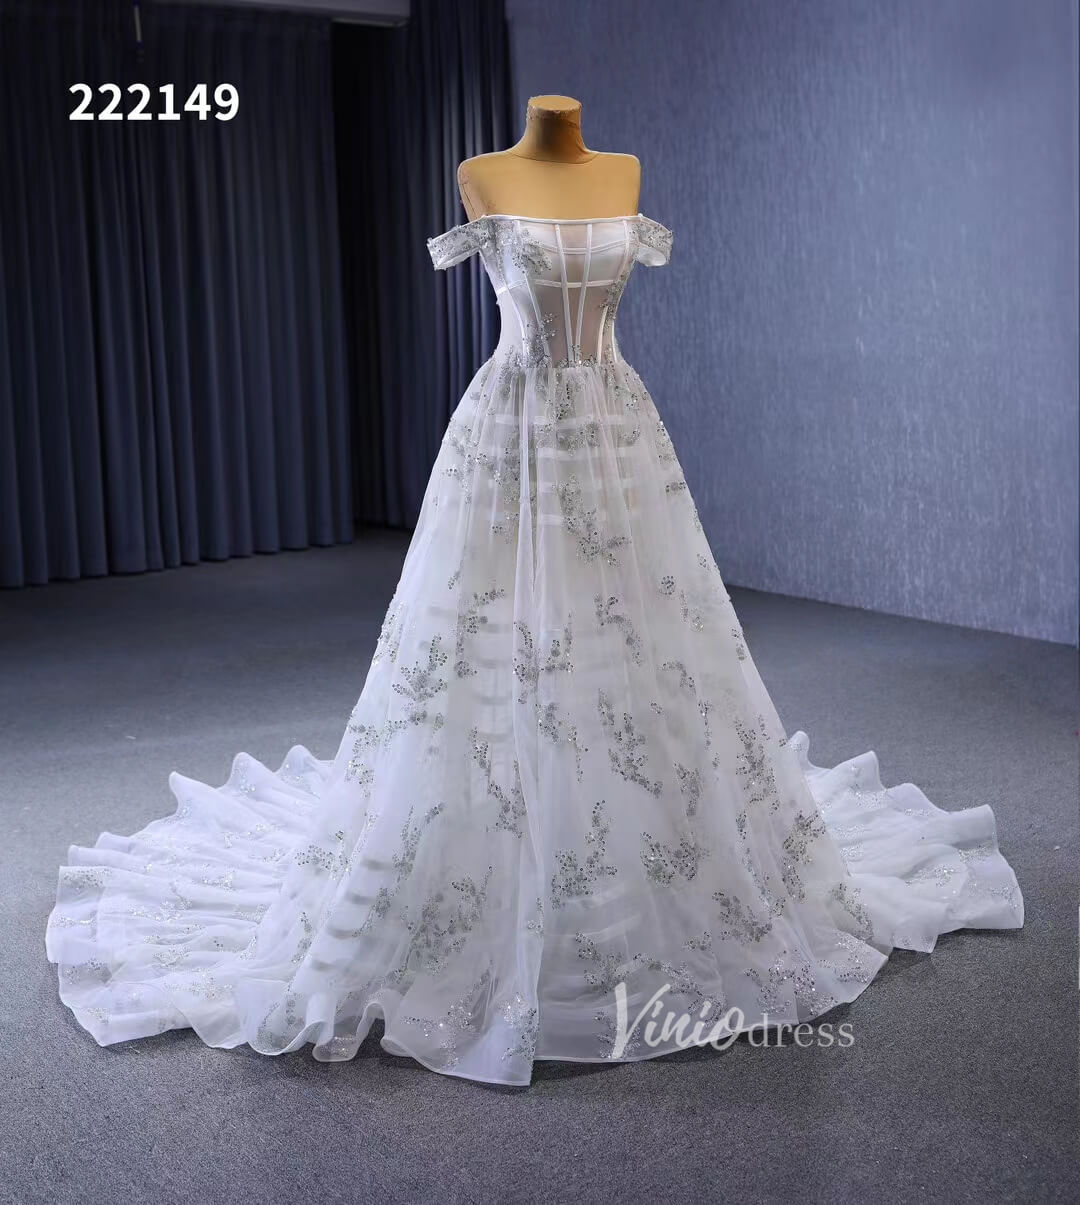 Beaded Floral Wedding Dresses Off the Shoulder 222149-wedding dresses-Viniodress-Viniodress